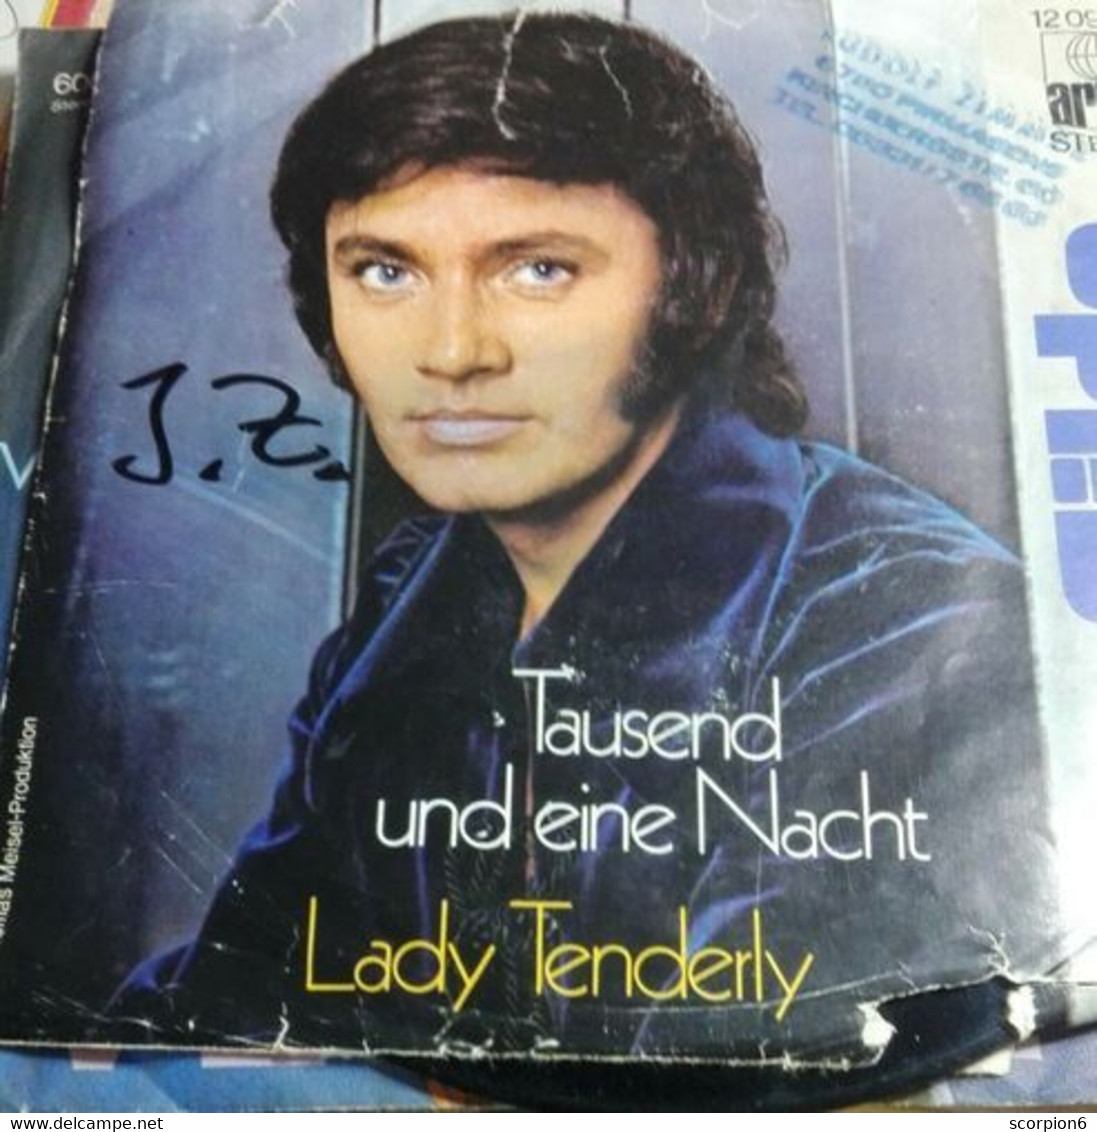 7" Single - Rex Gildo - Tausend Und Eine Nacht - Other - German Music